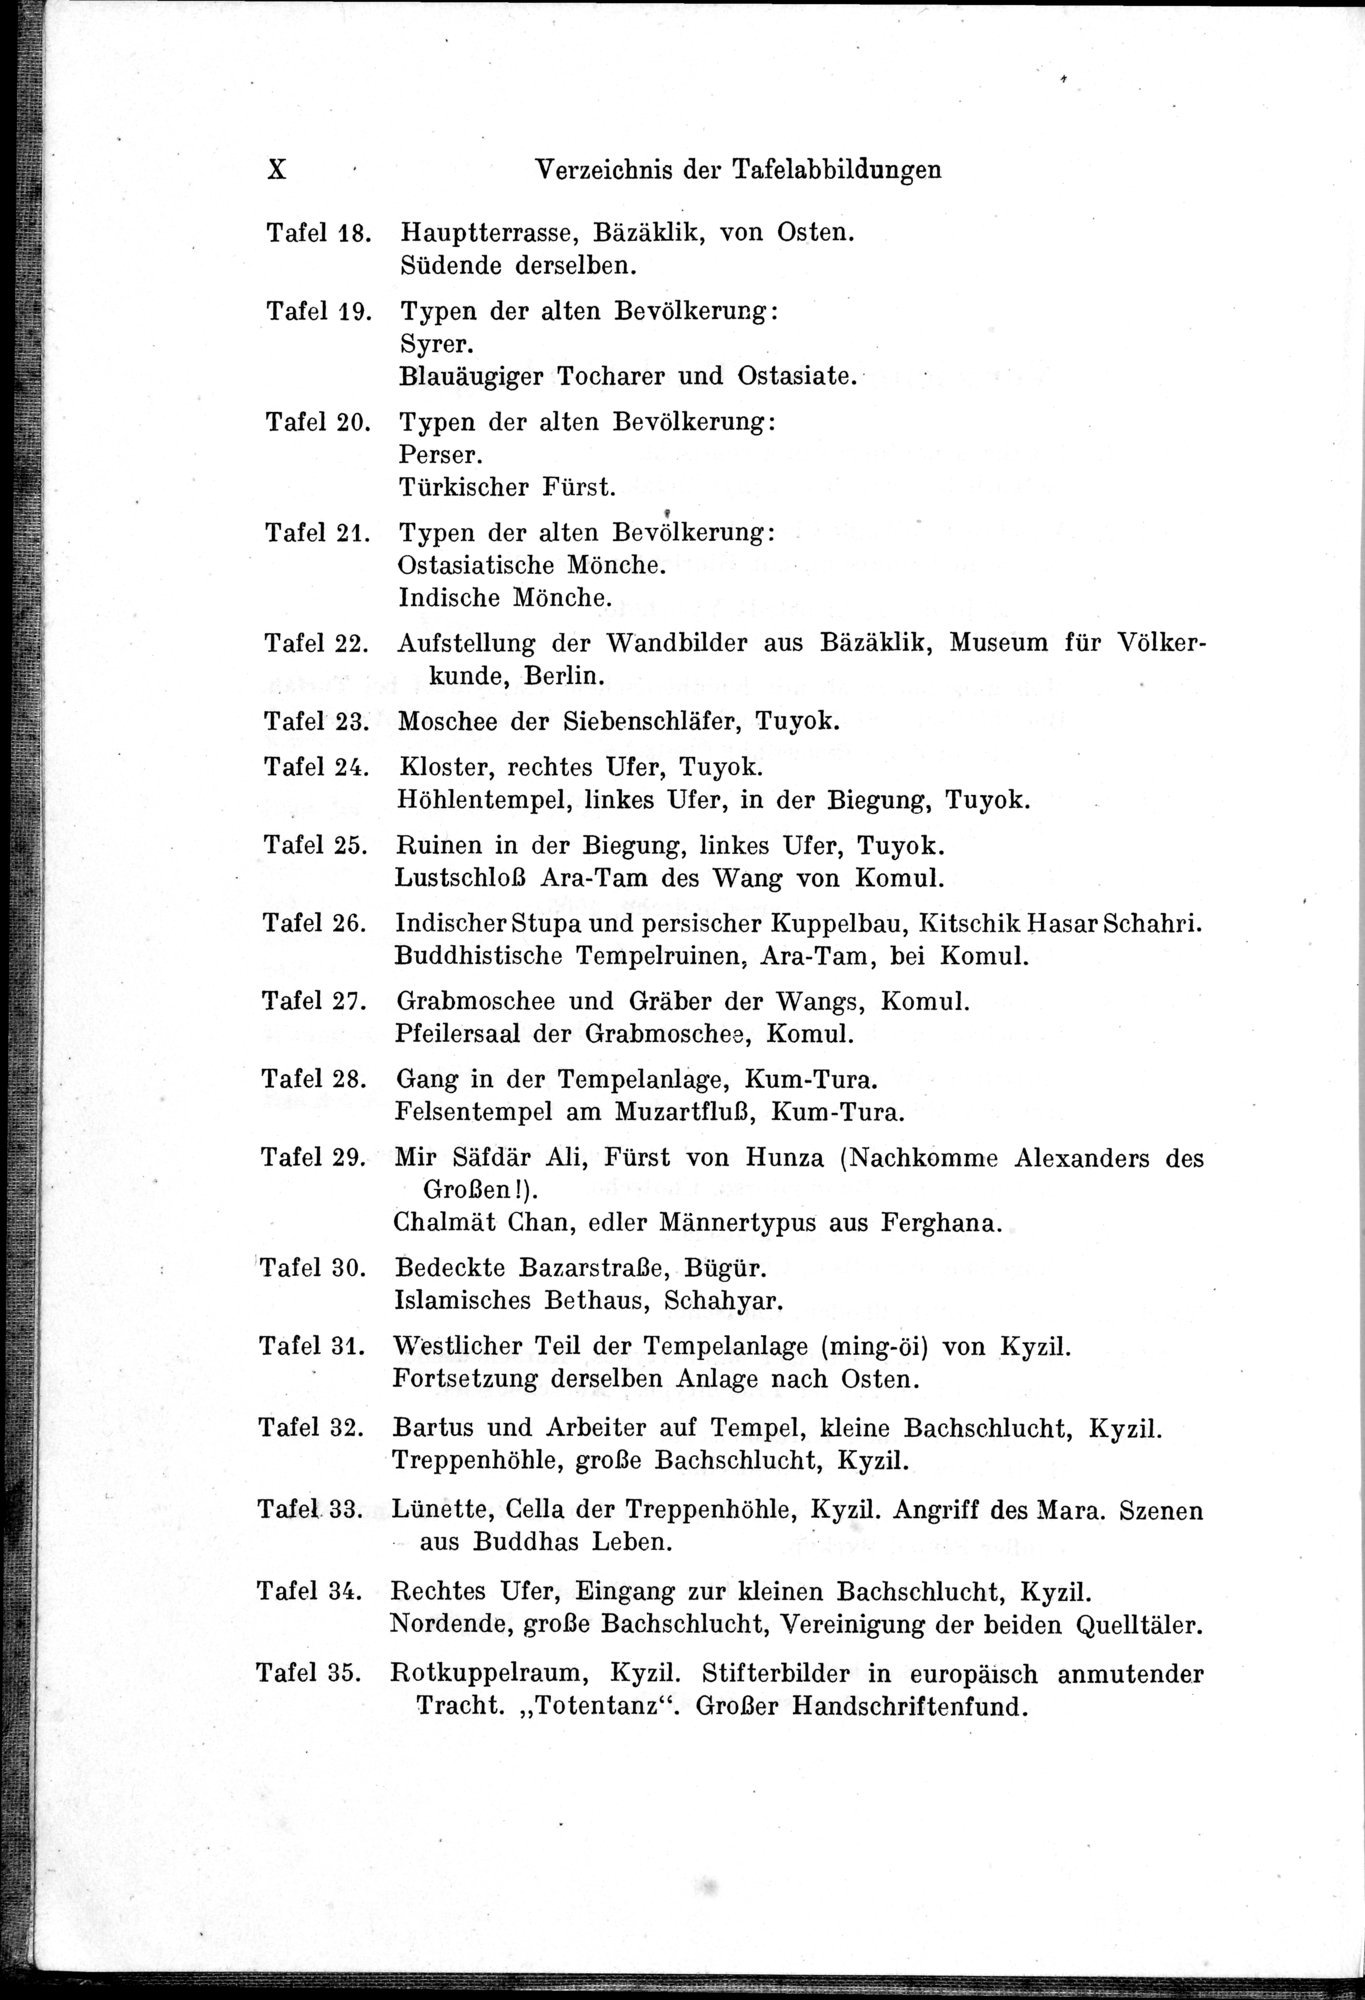 Auf Hellas Spuren in Ostturkistan : vol.1 / Page 14 (Grayscale High Resolution Image)